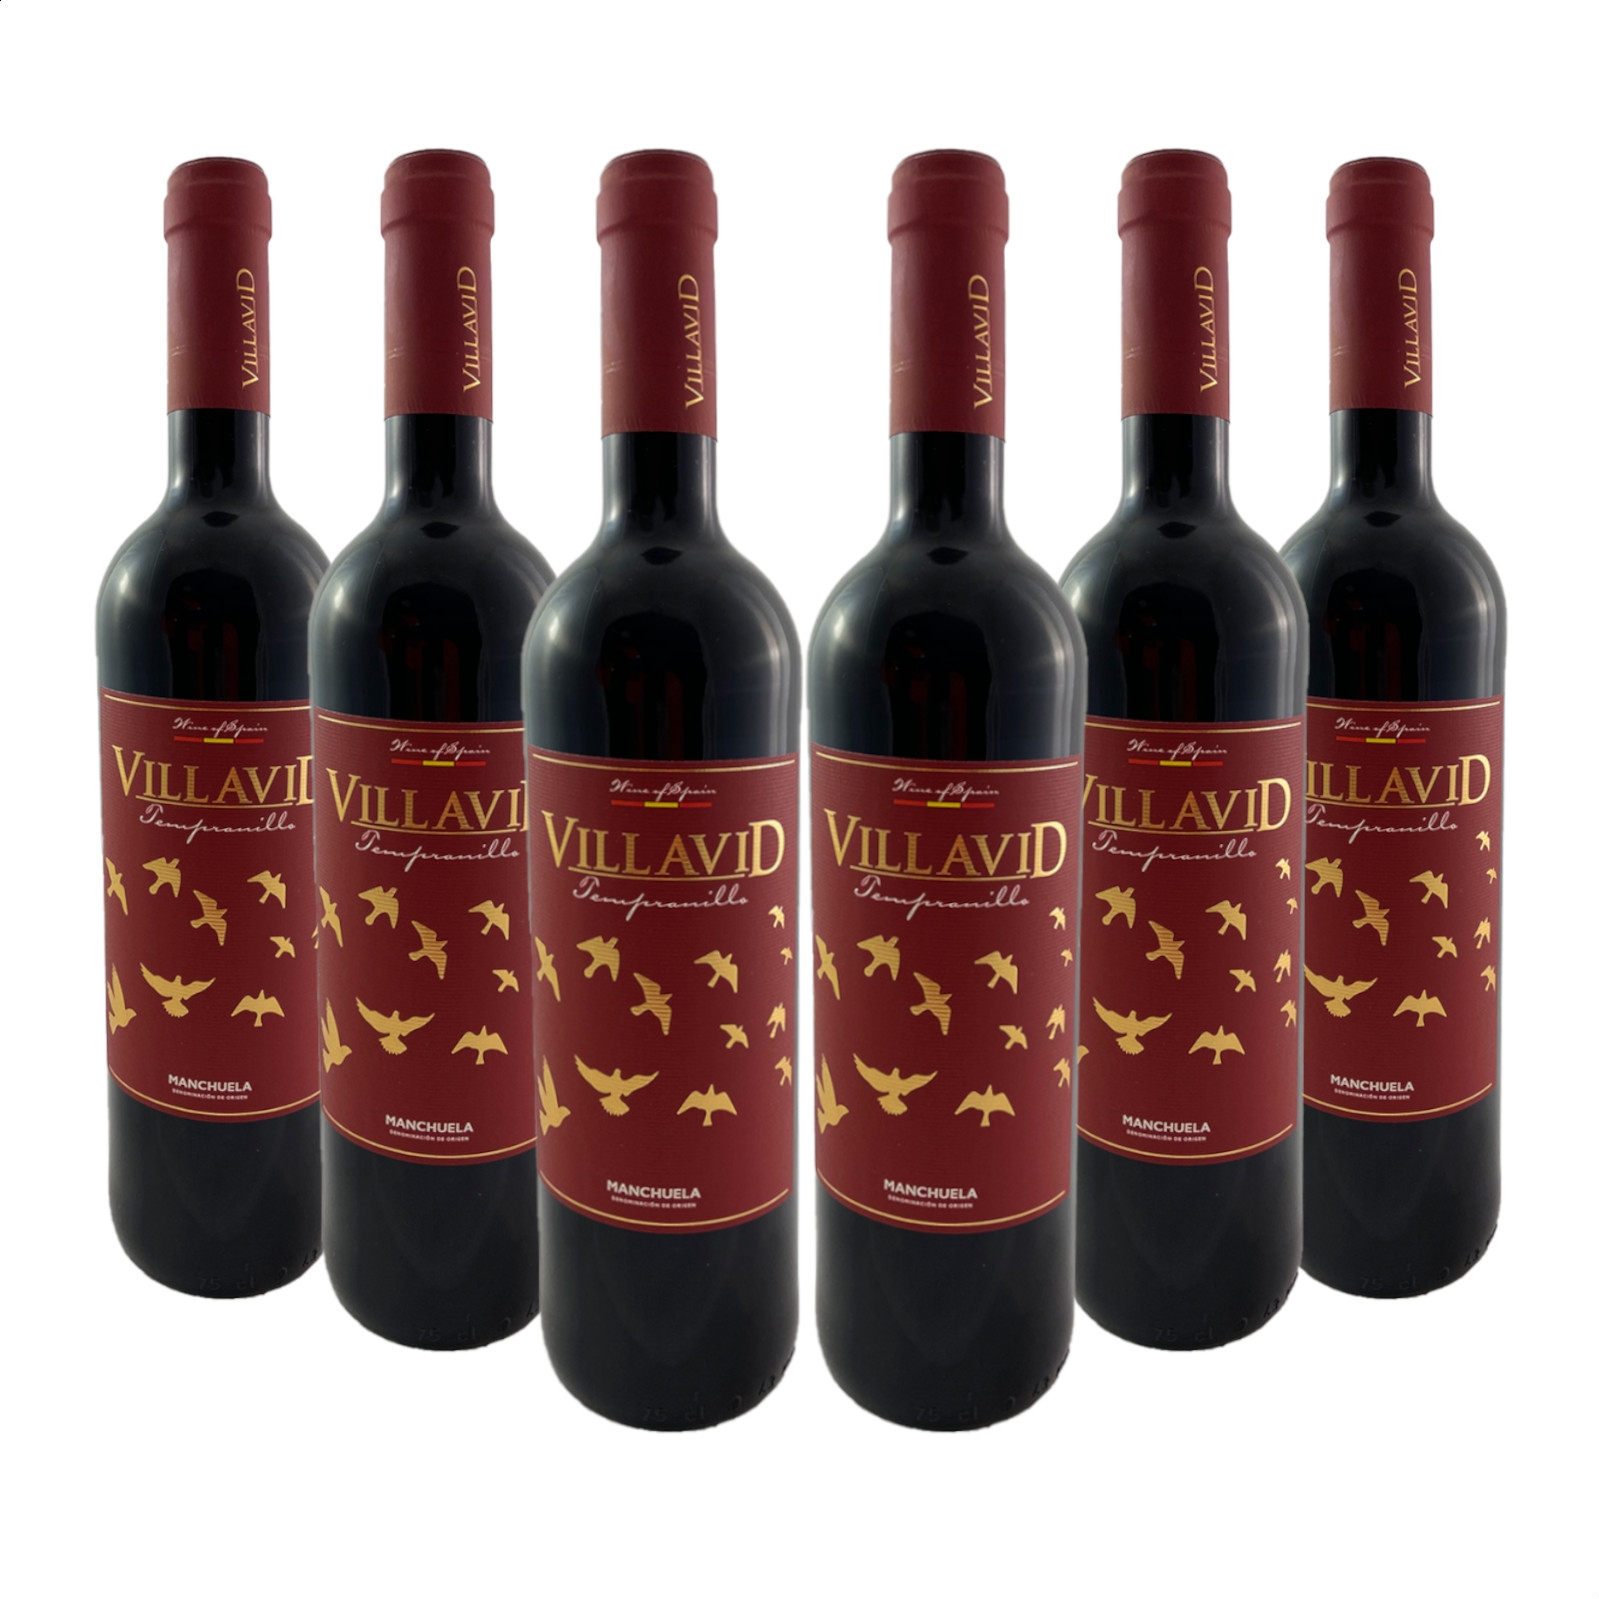 Bodegas Villavid - Tempranillo vino tinto D.O.P. Manchuela 75cl, 6uds